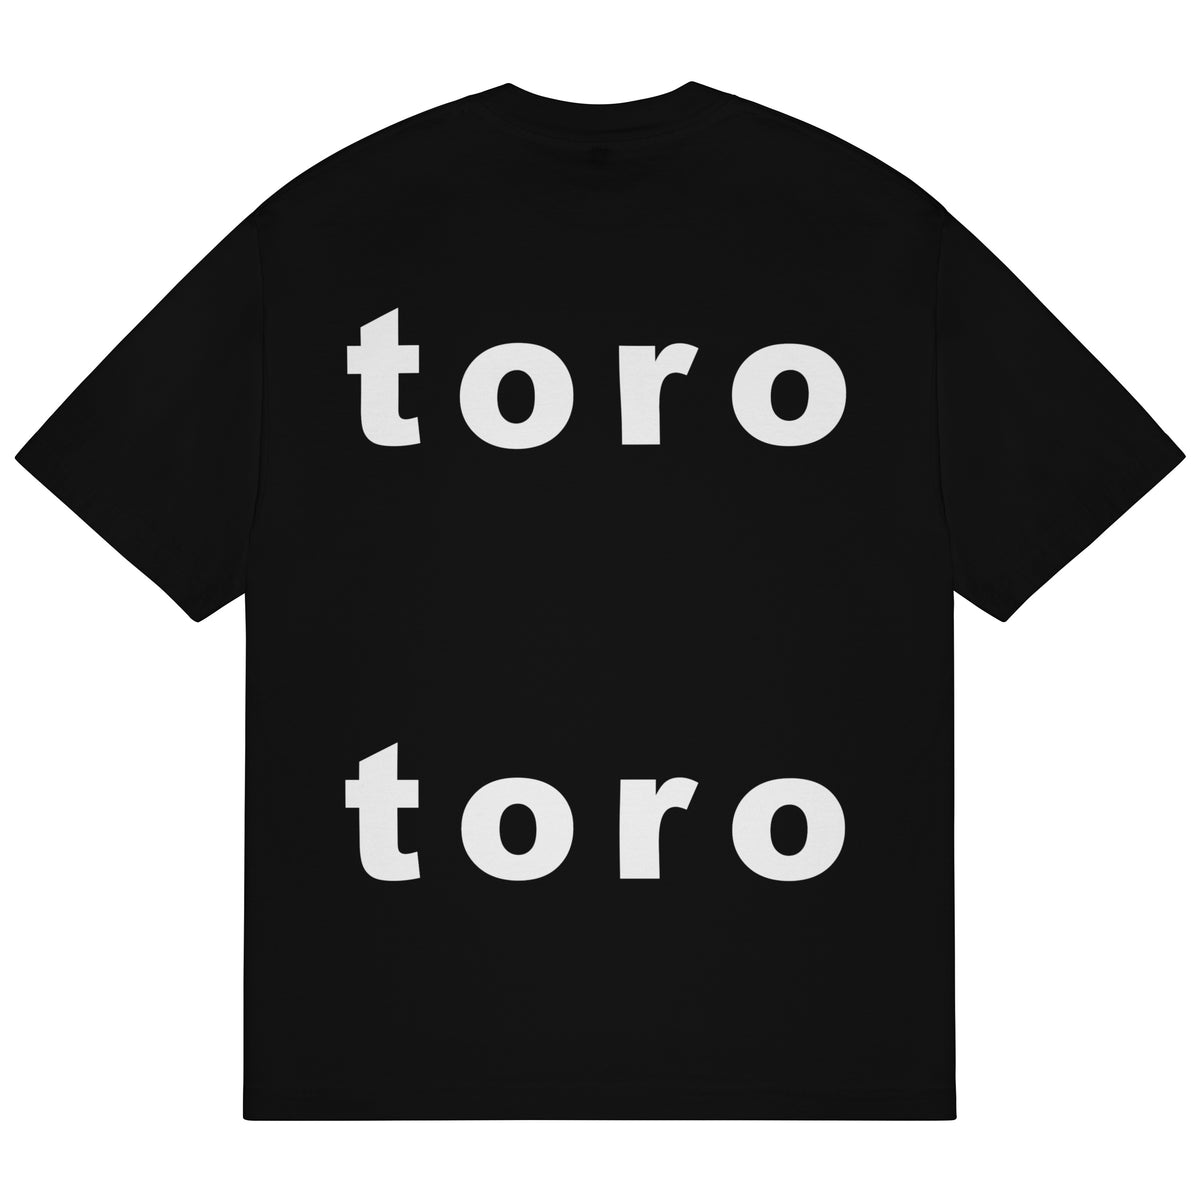 toro-toro T-Shirt (Black)